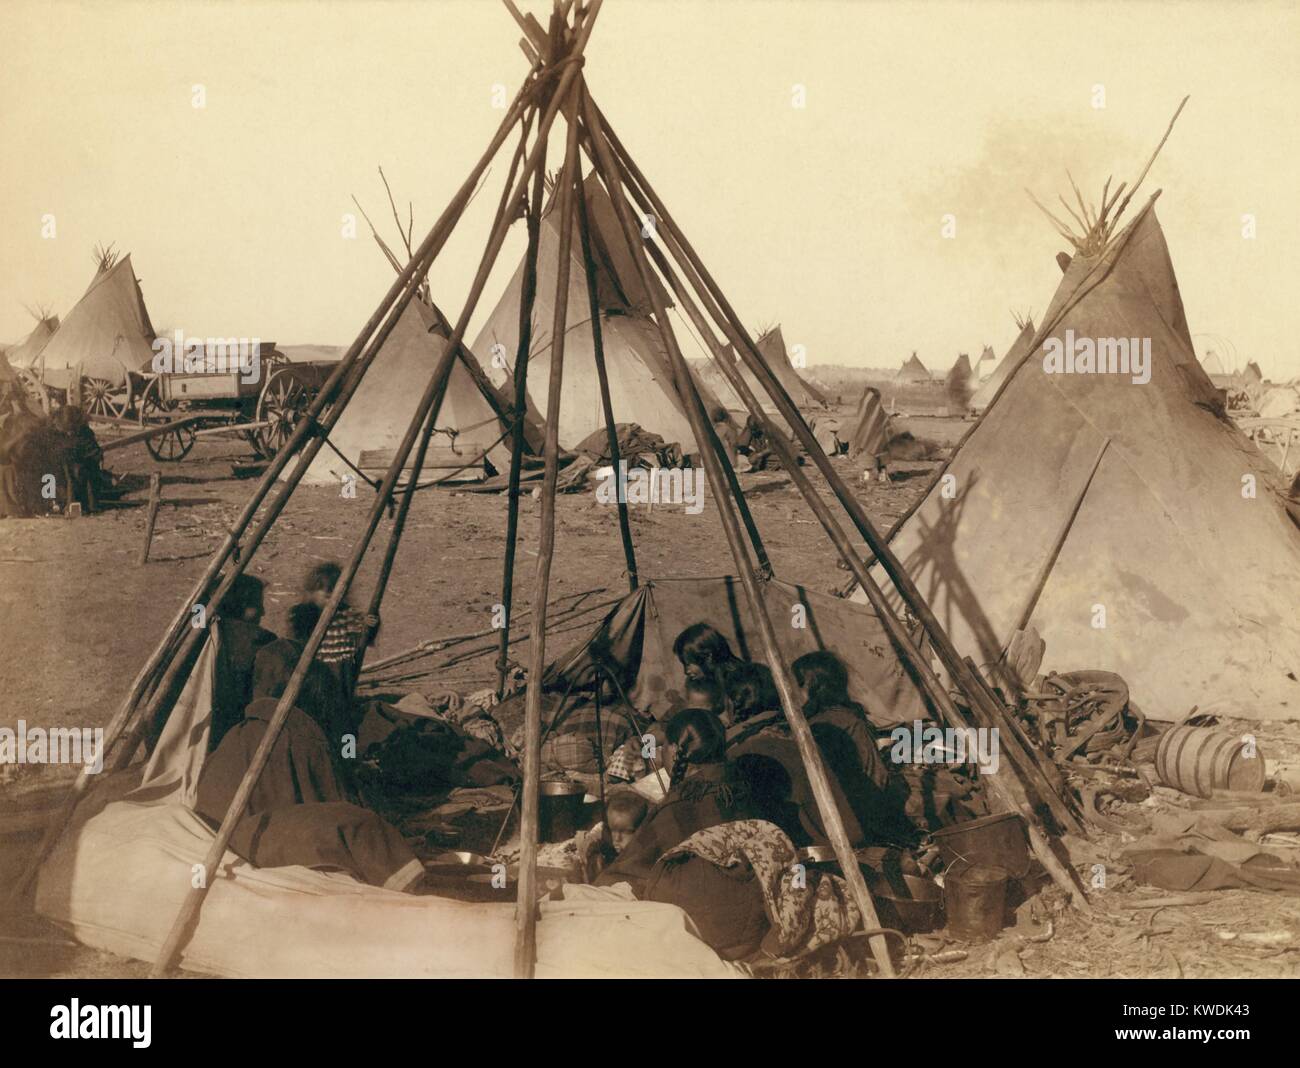 Oglala Sioux Frauen und Kinder in einem Unbedeckten tipi Frame in der Nähe von Pine Ridge Agentur, 31.01.1891. Darüber hinaus sind andere Indianer und die Materialien auf ihr Lager in der Nähe des Wounded Knee Massacre. Foto von John Grabill, Jan. 1891 (BSLOC 2017 18 33) Stockfoto